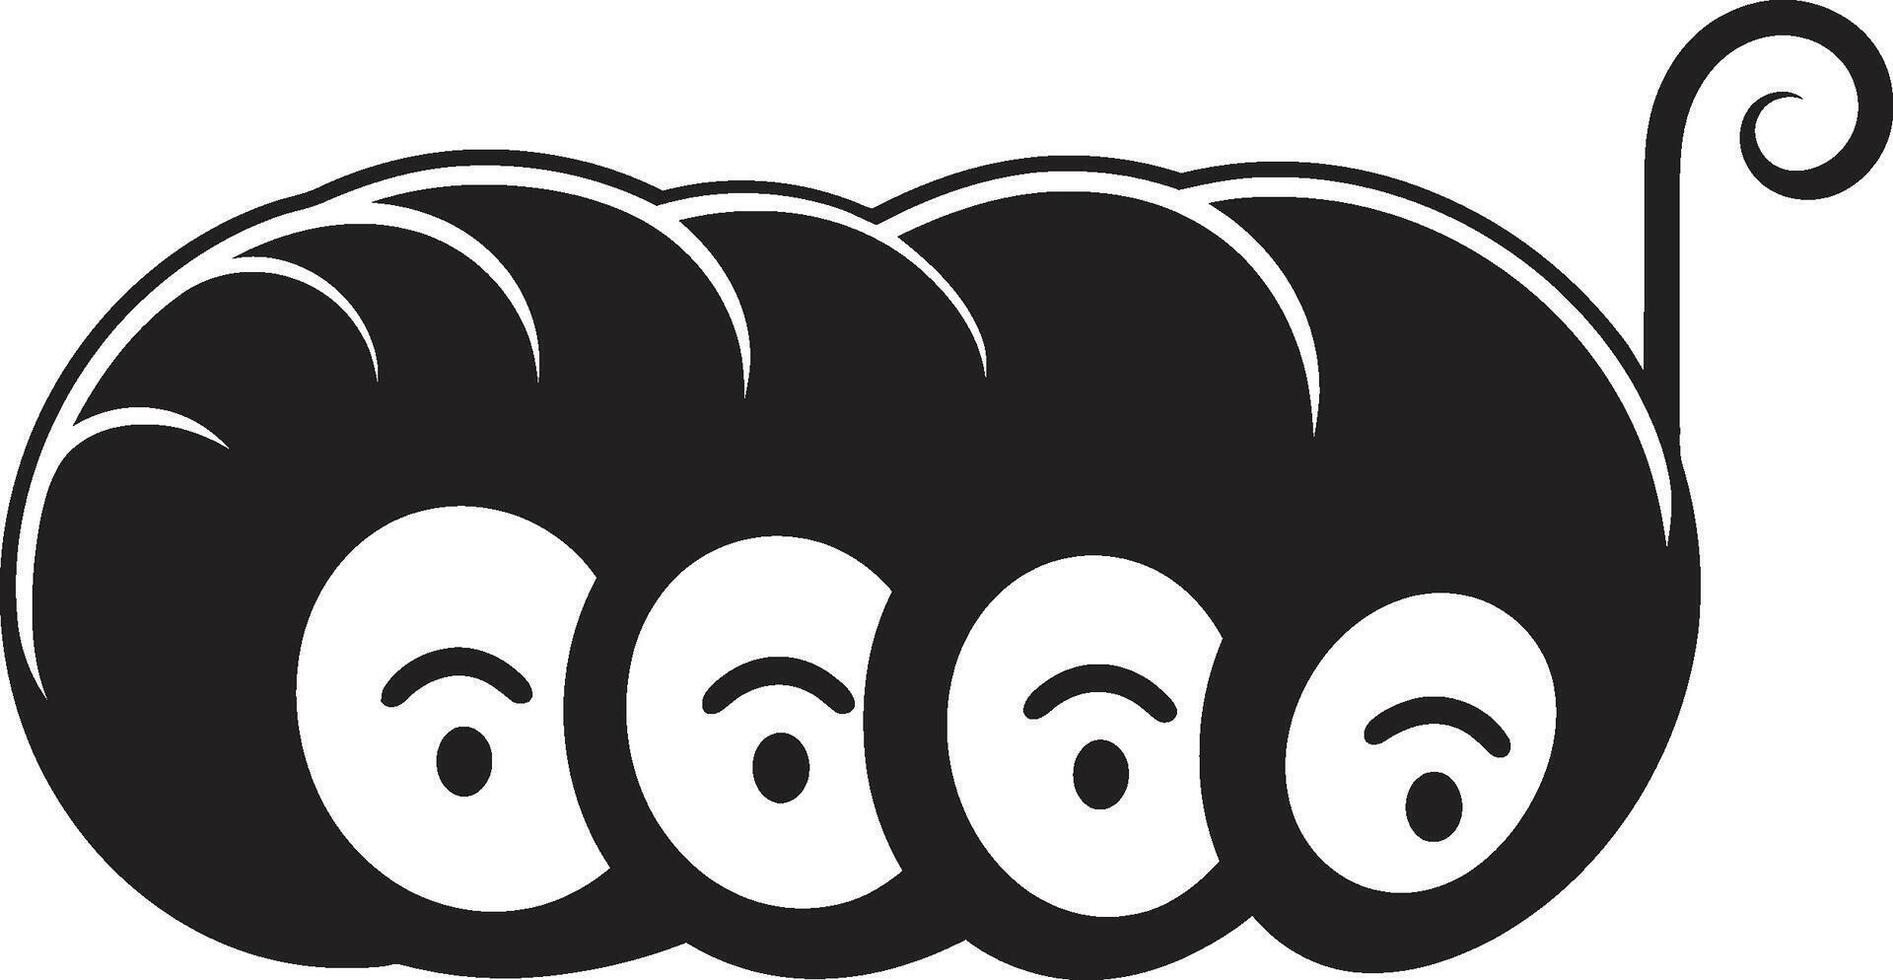 crawl à élégance lisse chenille emblème dans monochromatique conception larvaire luxe noir icône mettant en valeur chenille vecteur logo